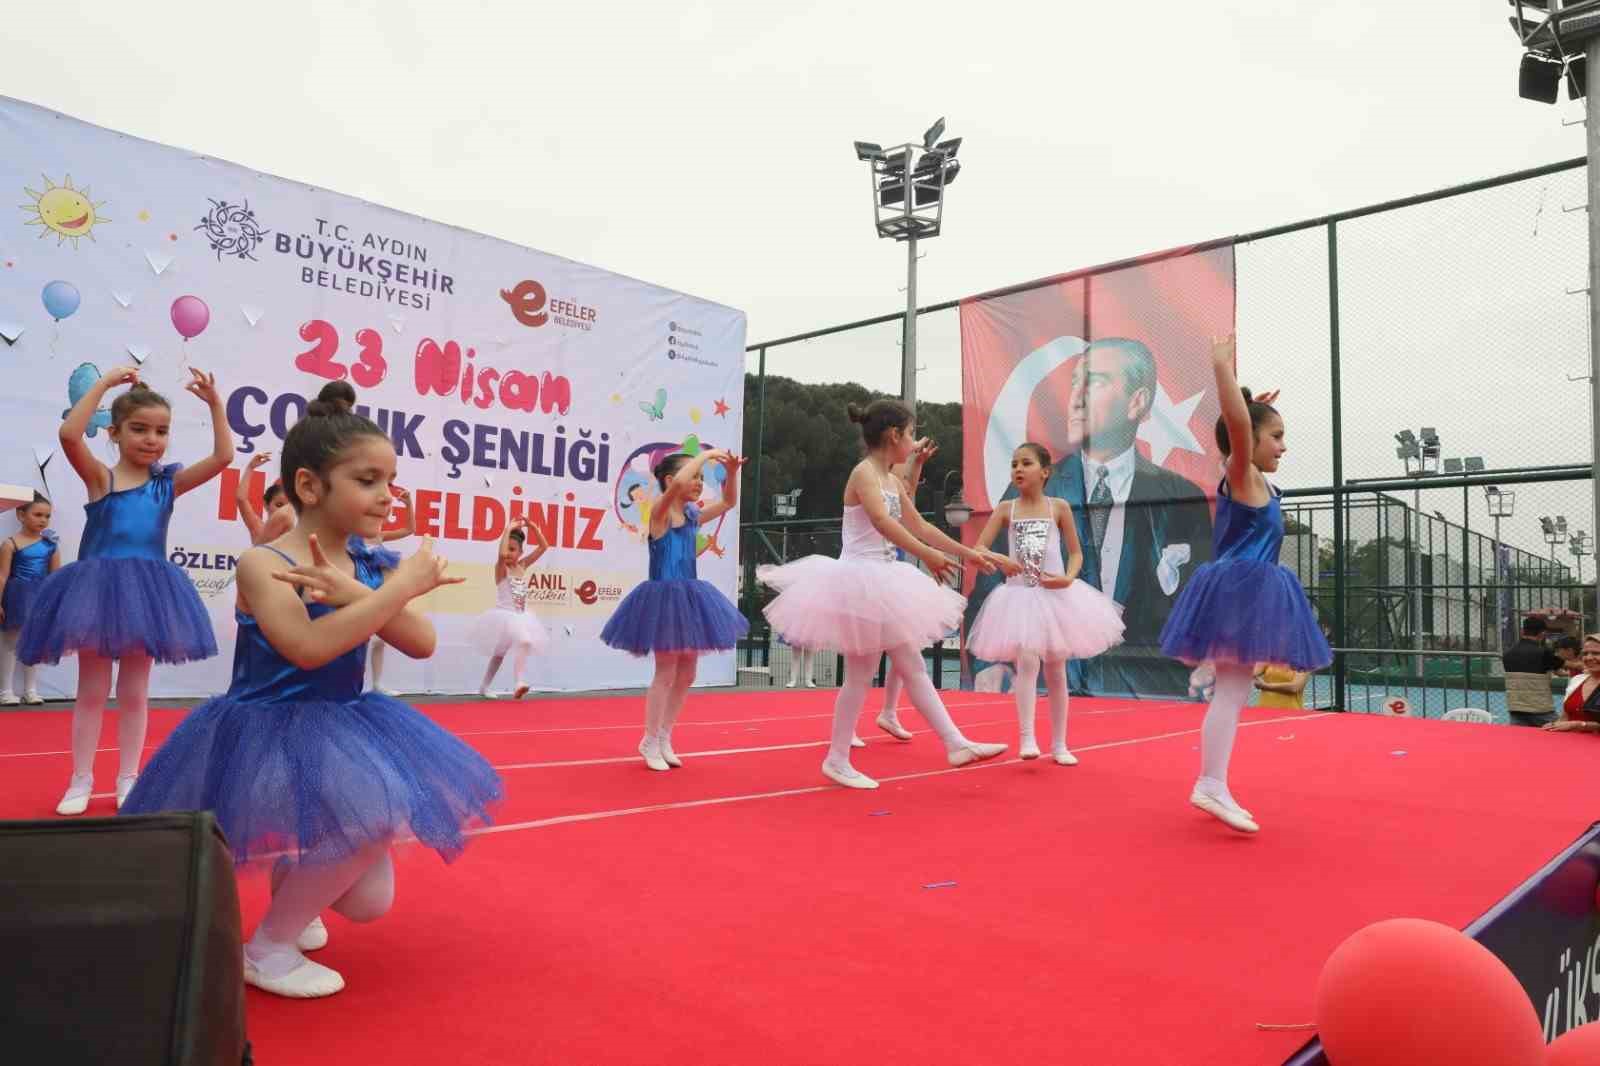 Aydın Büyükşehir Belediyesi 23 Nisan’ı şenliklerle kutladı
